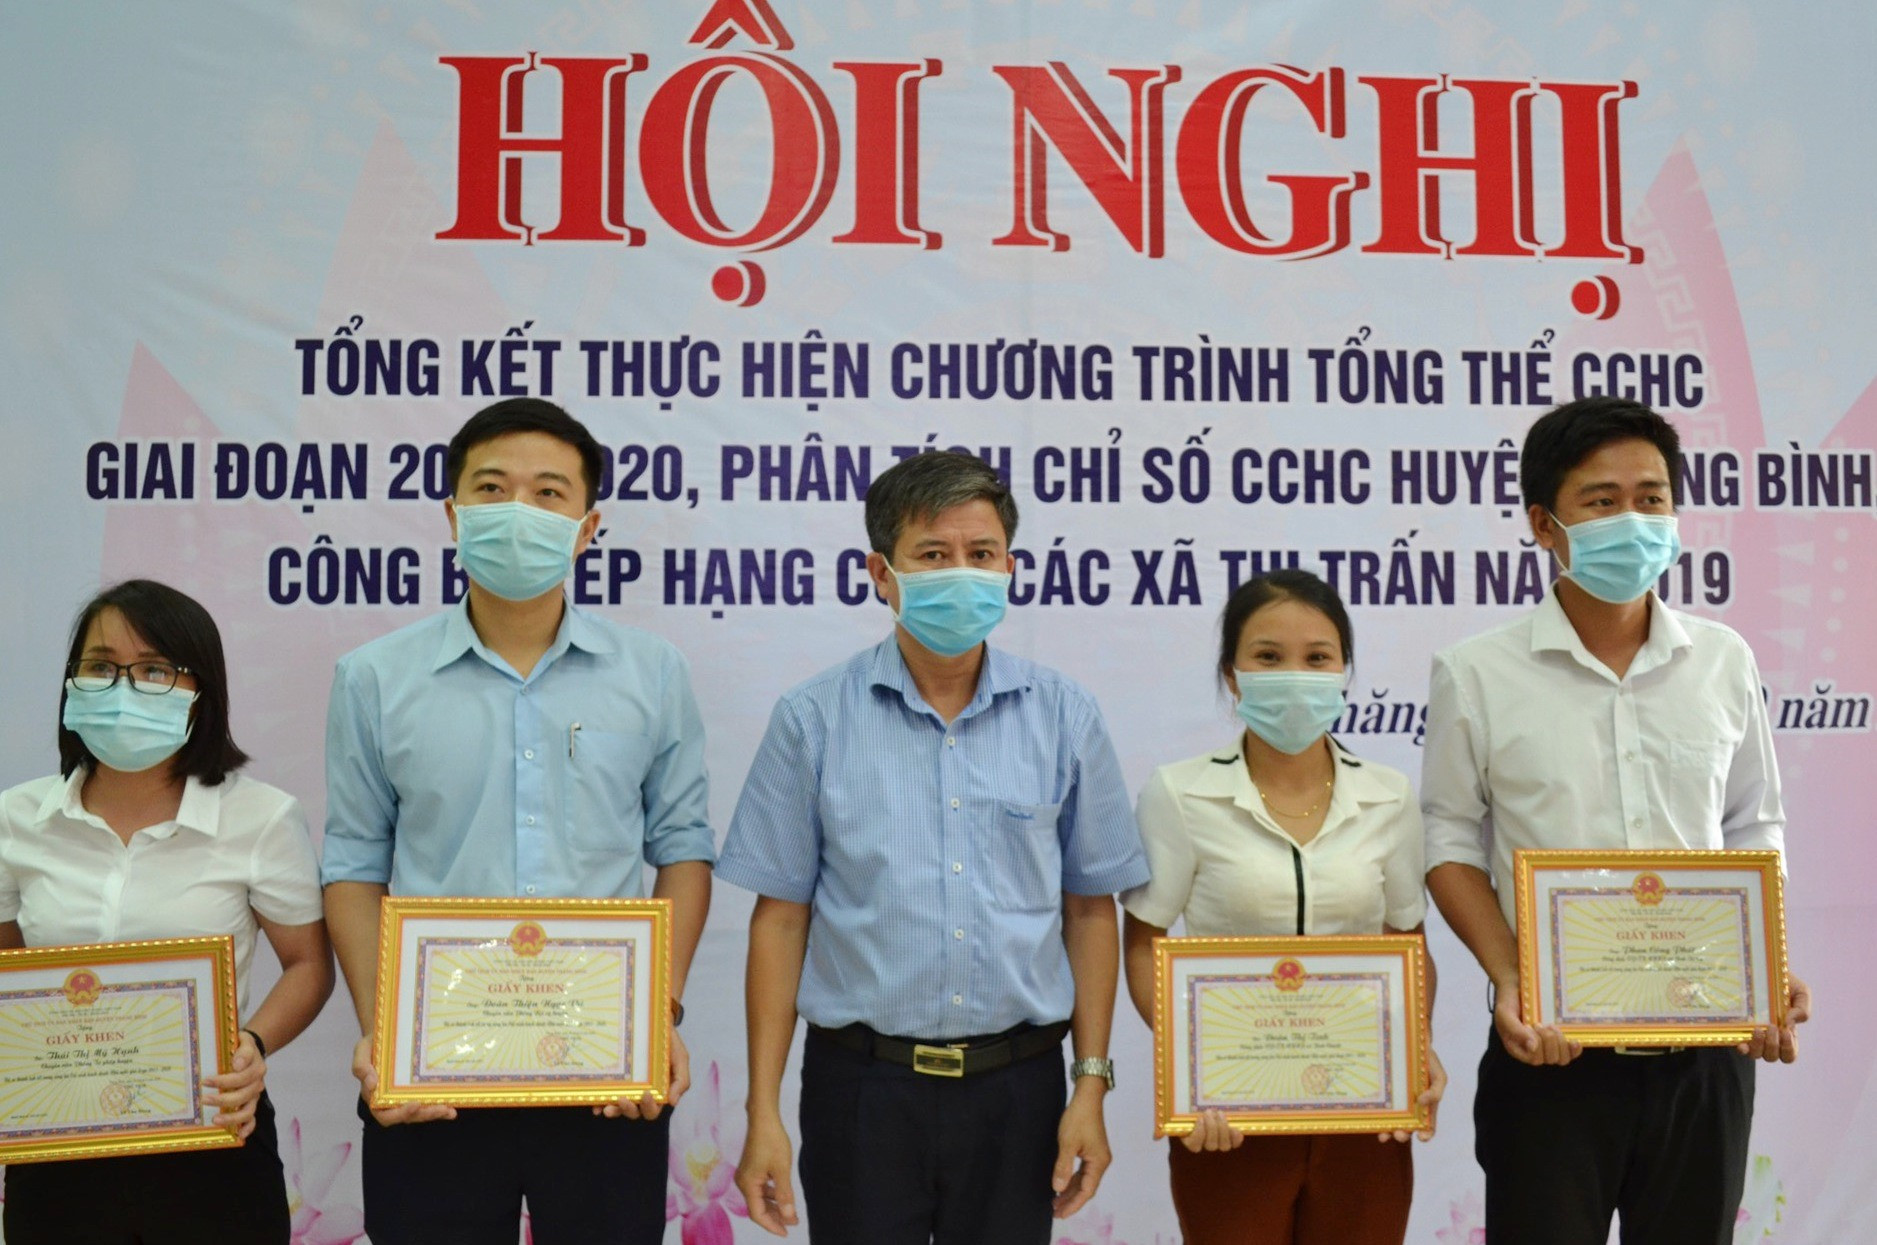 UBND huyện Thăng Bình khen thưởng một số cá nhâ, tập thể đạt thành tích trong cải cách hành chính giai đoạn 2011-2020.